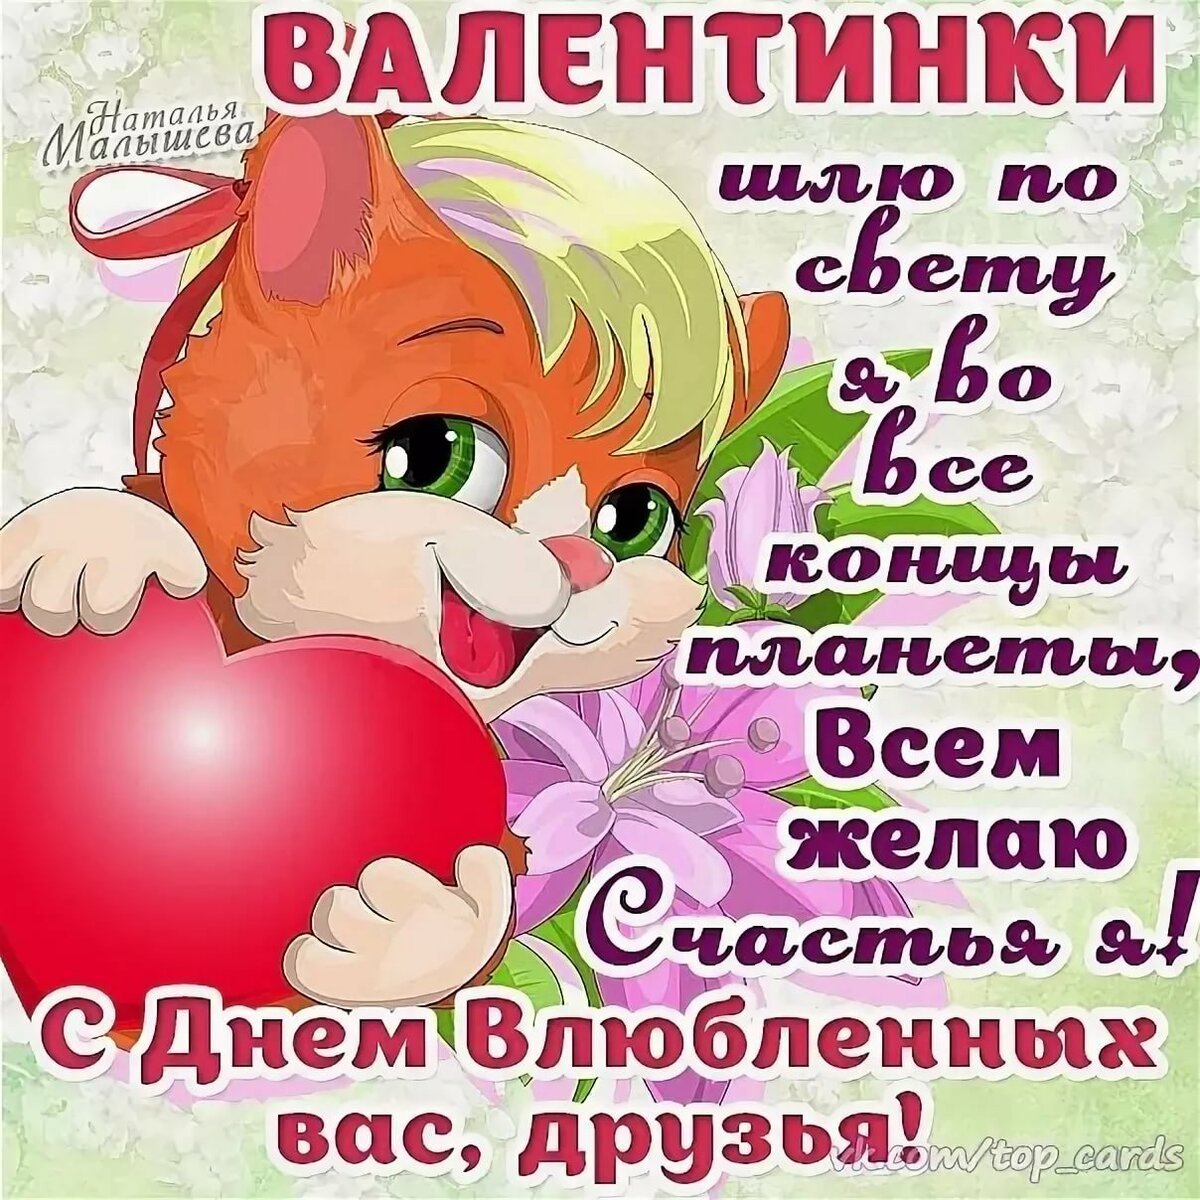 Милый рисунок котенка, держащего сердце, с поздравлениями на День святого Валентина на русском языке.